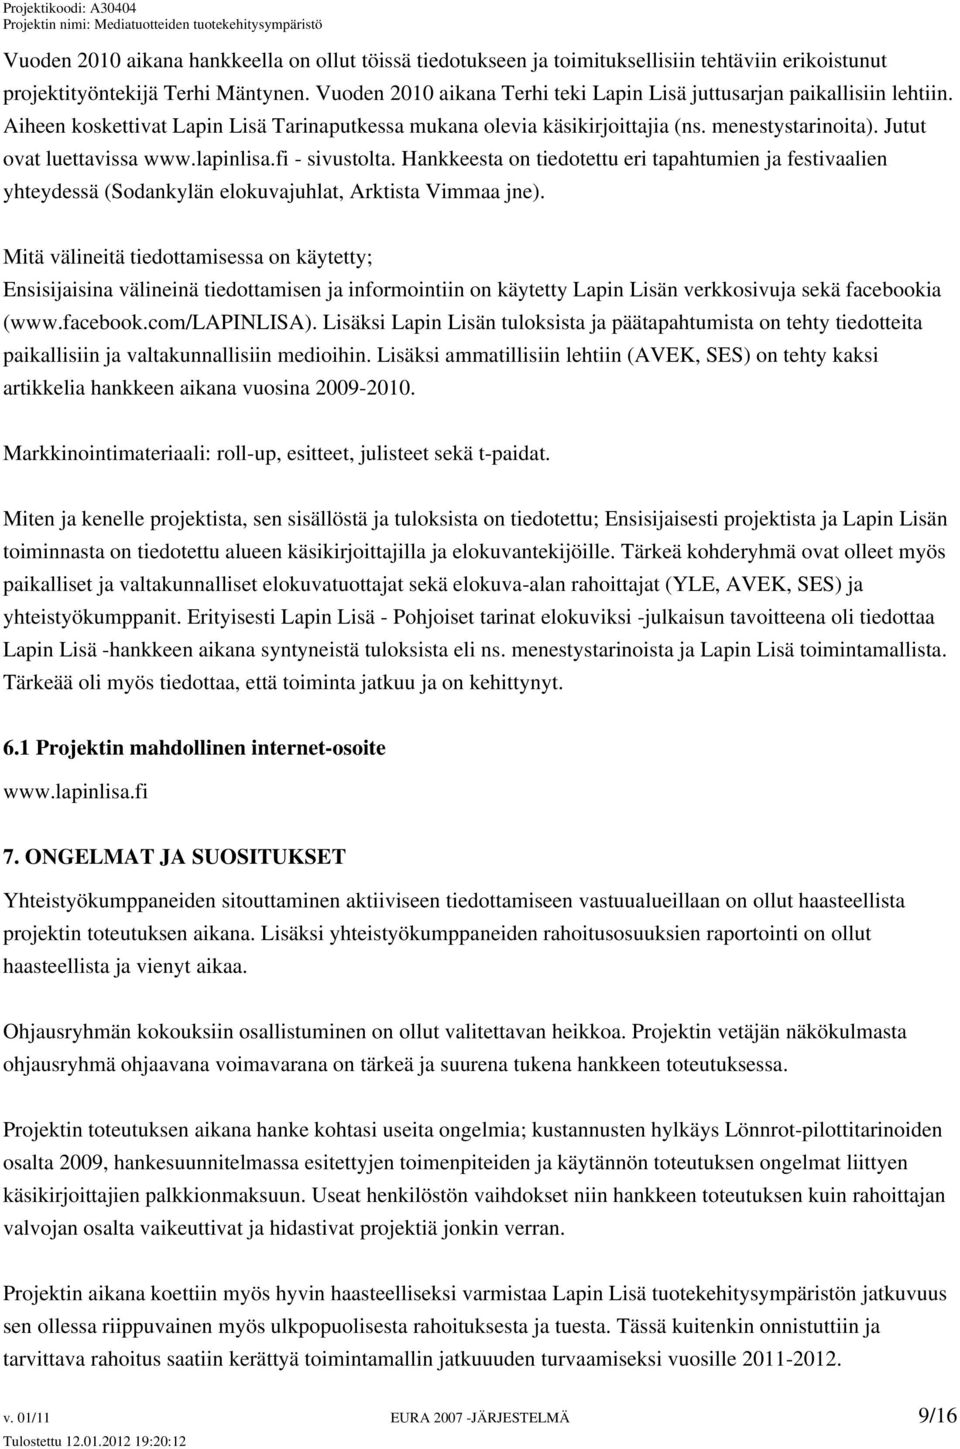 Jutut ovat luettavissa www.lapinlisa.fi - sivustolta. Hankkeesta on tiedotettu eri tapahtumien ja festivaalien yhteydessä (Sodankylän elokuvajuhlat, Arktista Vimmaa jne).